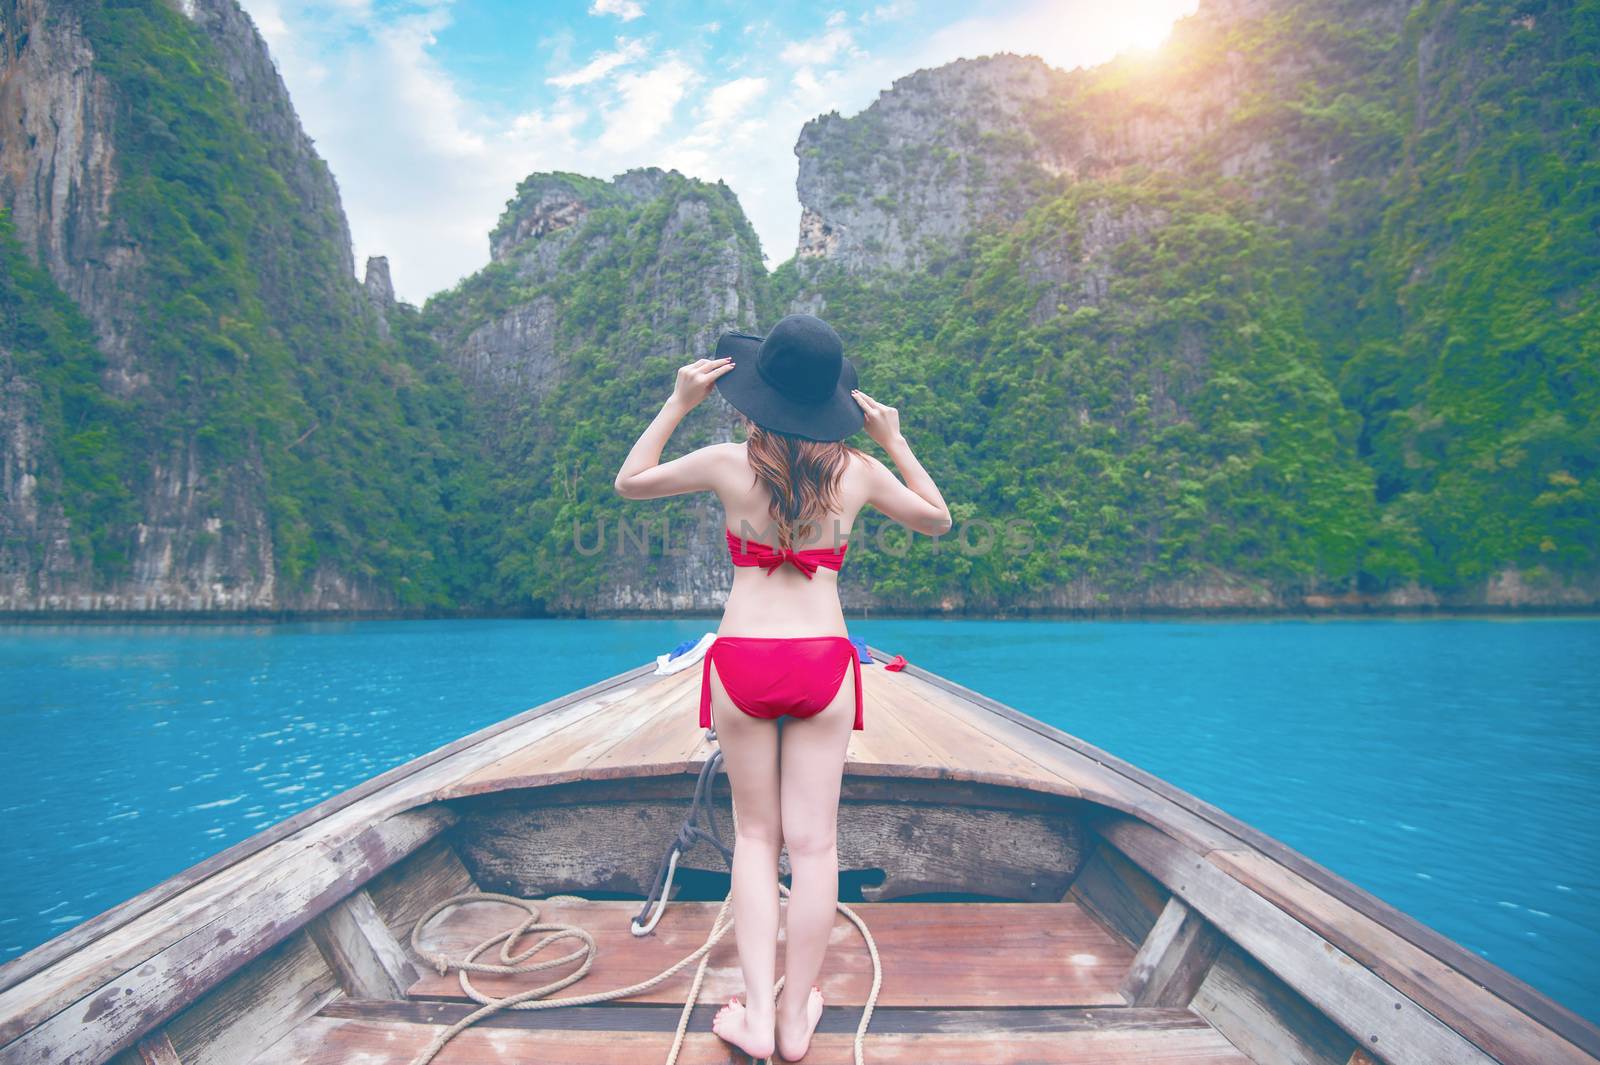 Beautiful girl in red bikini on boat. Vintage tone.